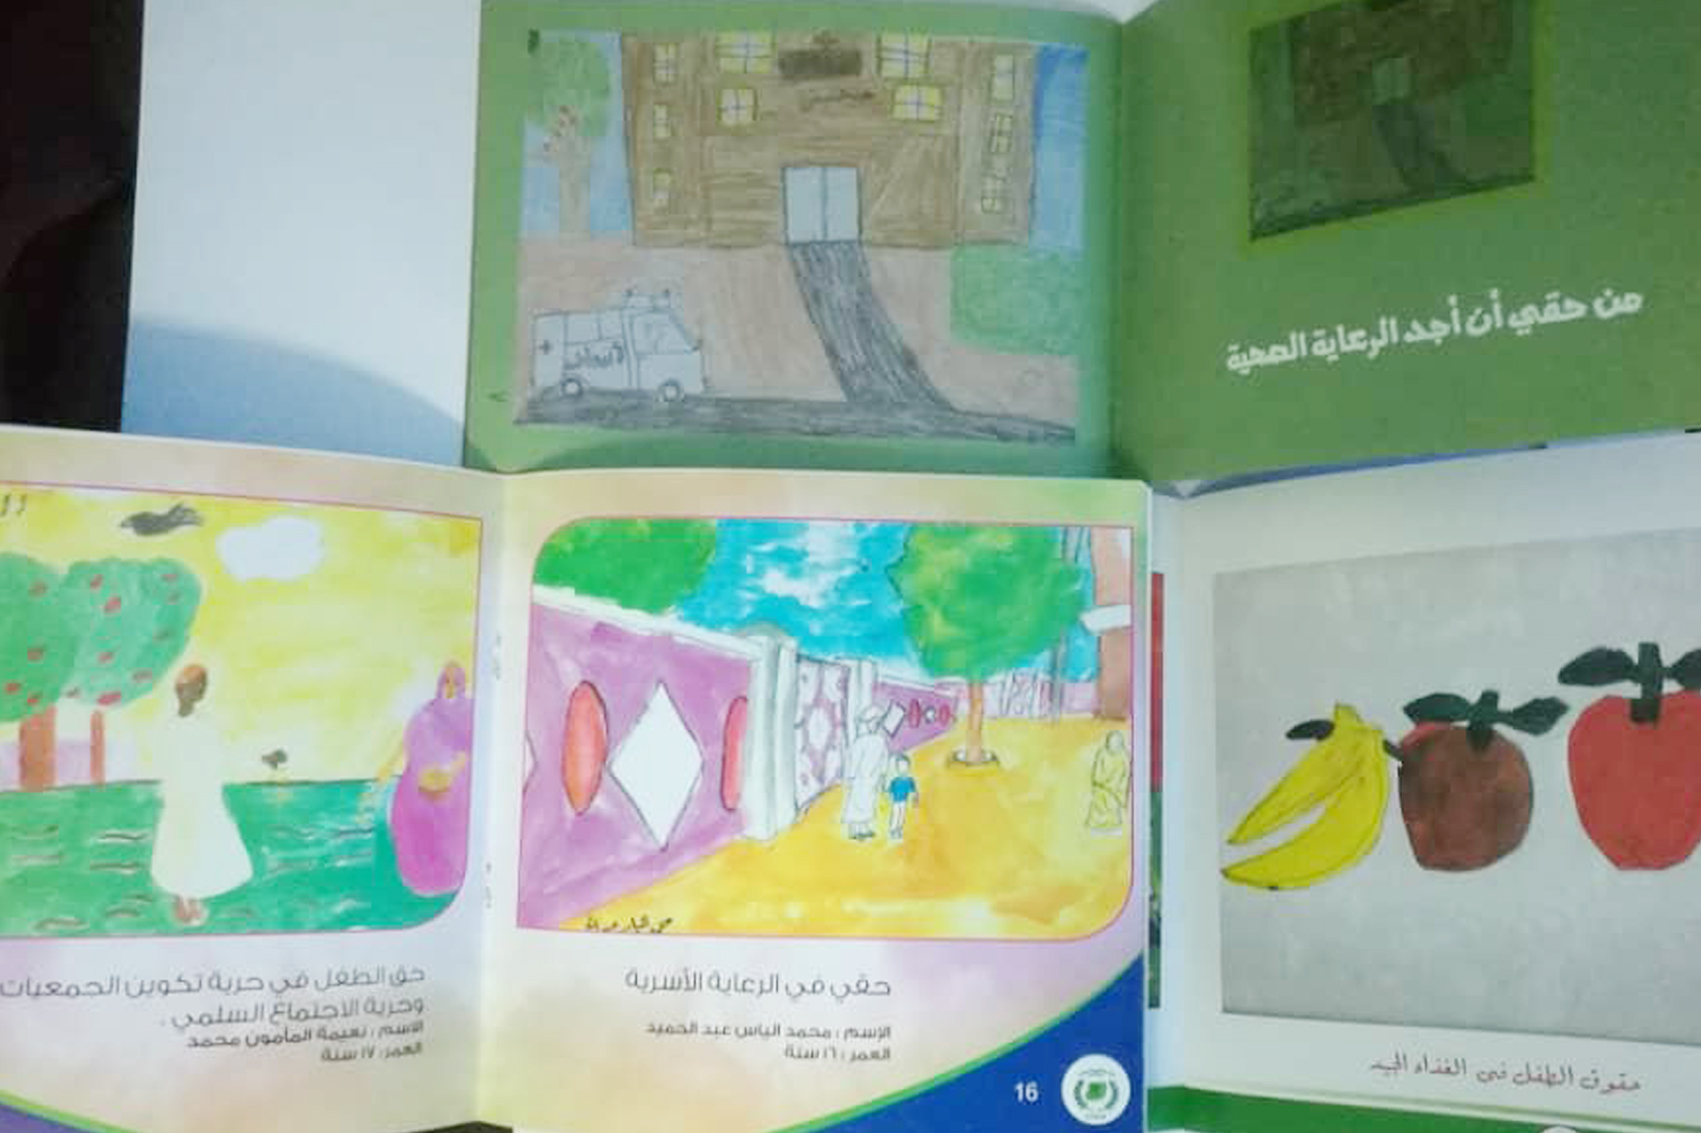 كاتالوج لرسومات الأطفال الصم في السودان